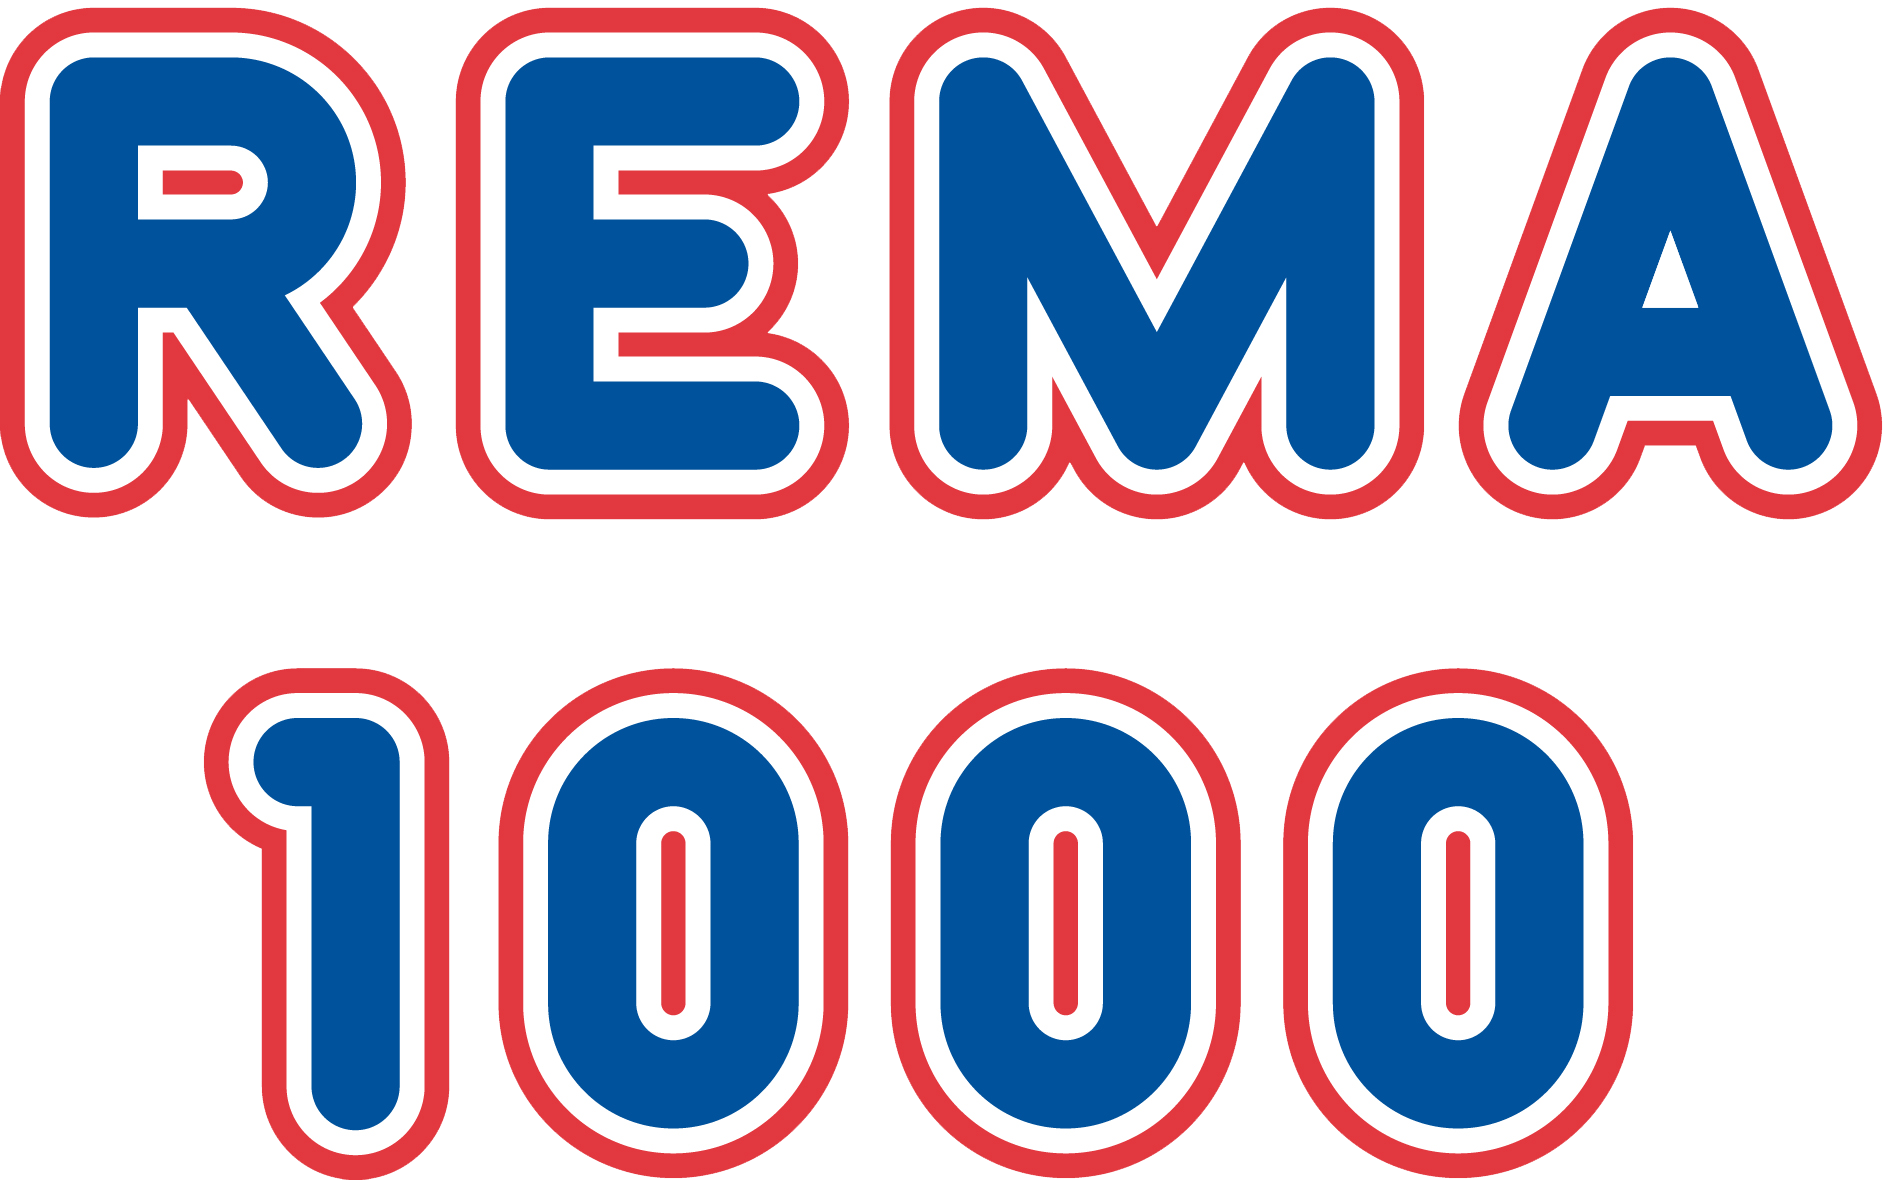 REMA 1000